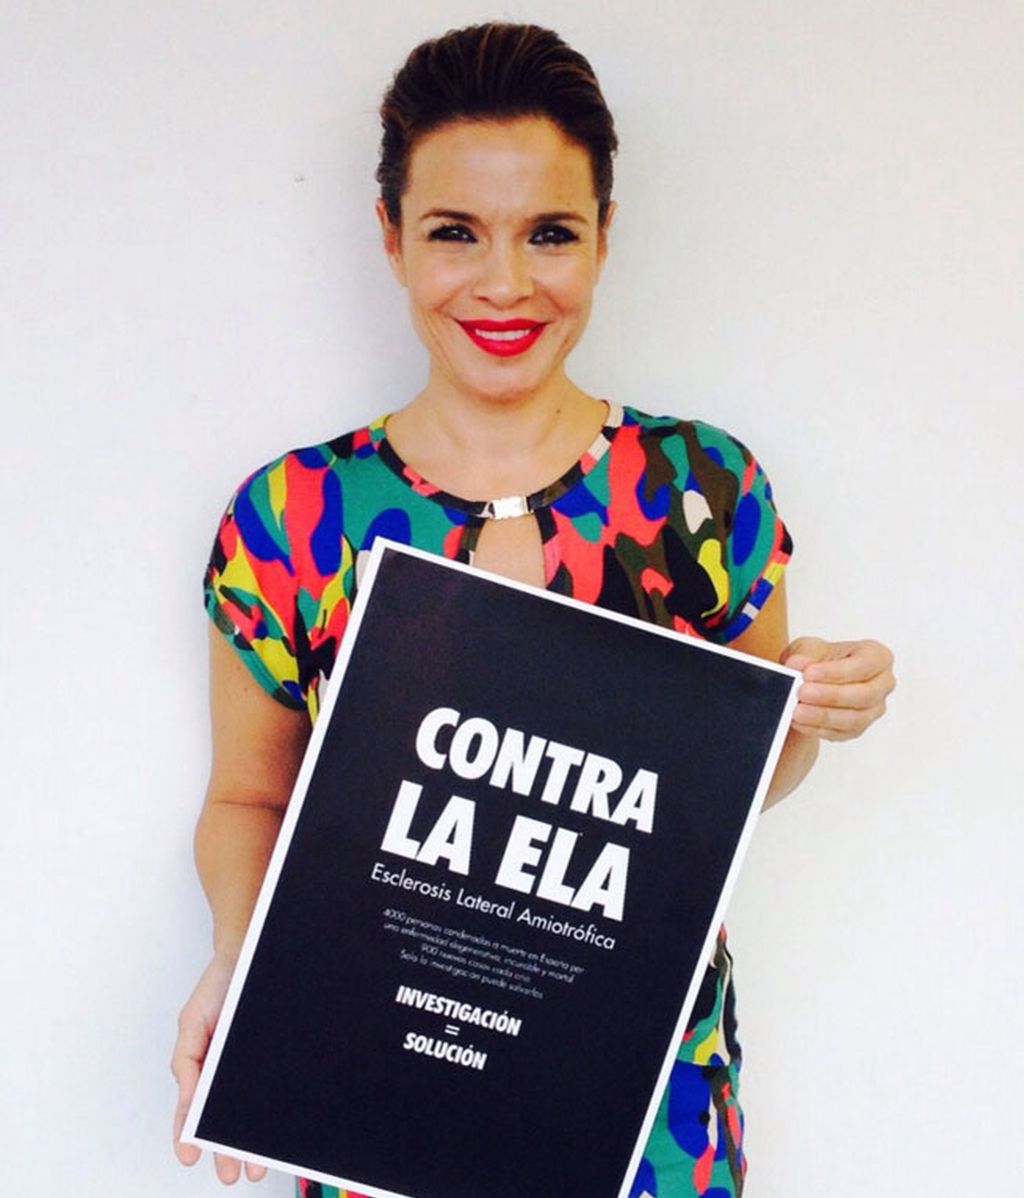 Las caras de Mediaset España, en apoyo a los enfermos de ELA